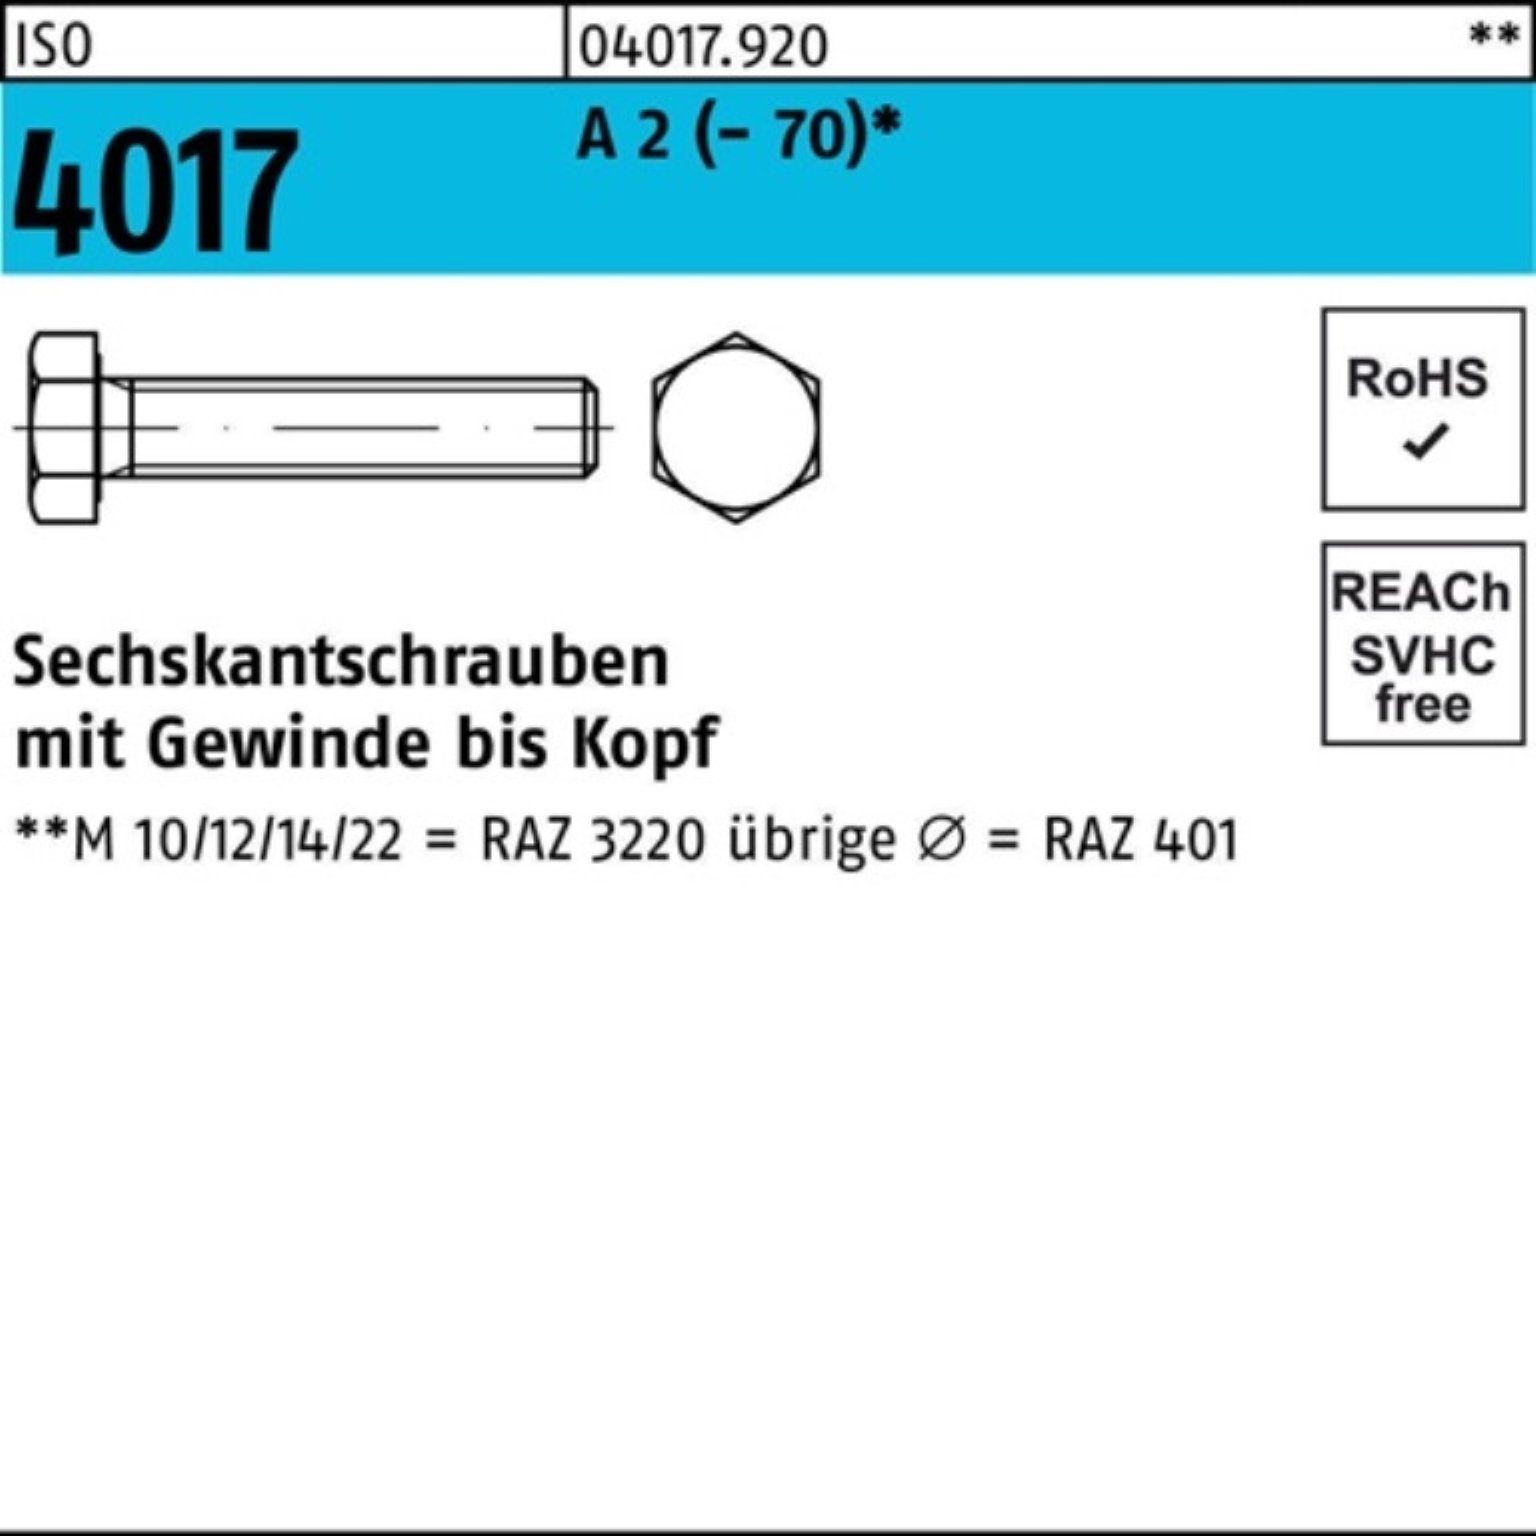 Bufab Sechskantschraube 100er Pack A VG ISO (70) 1 2 M33x Sechskantschraube Stück 150 4017